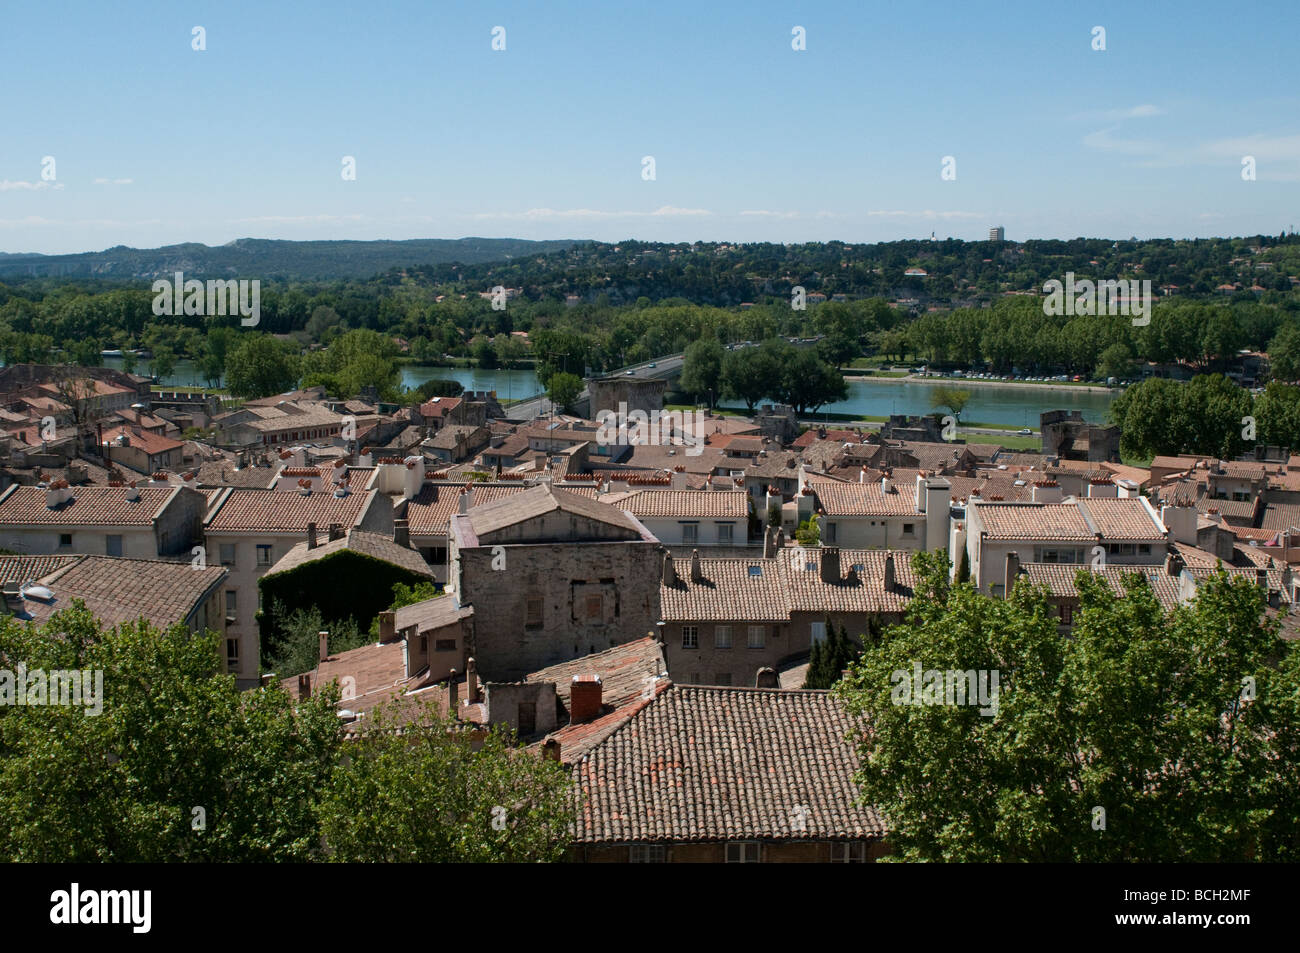 Les toits rouges de la ville et rivière Rhone Avignon France Banque D'Images